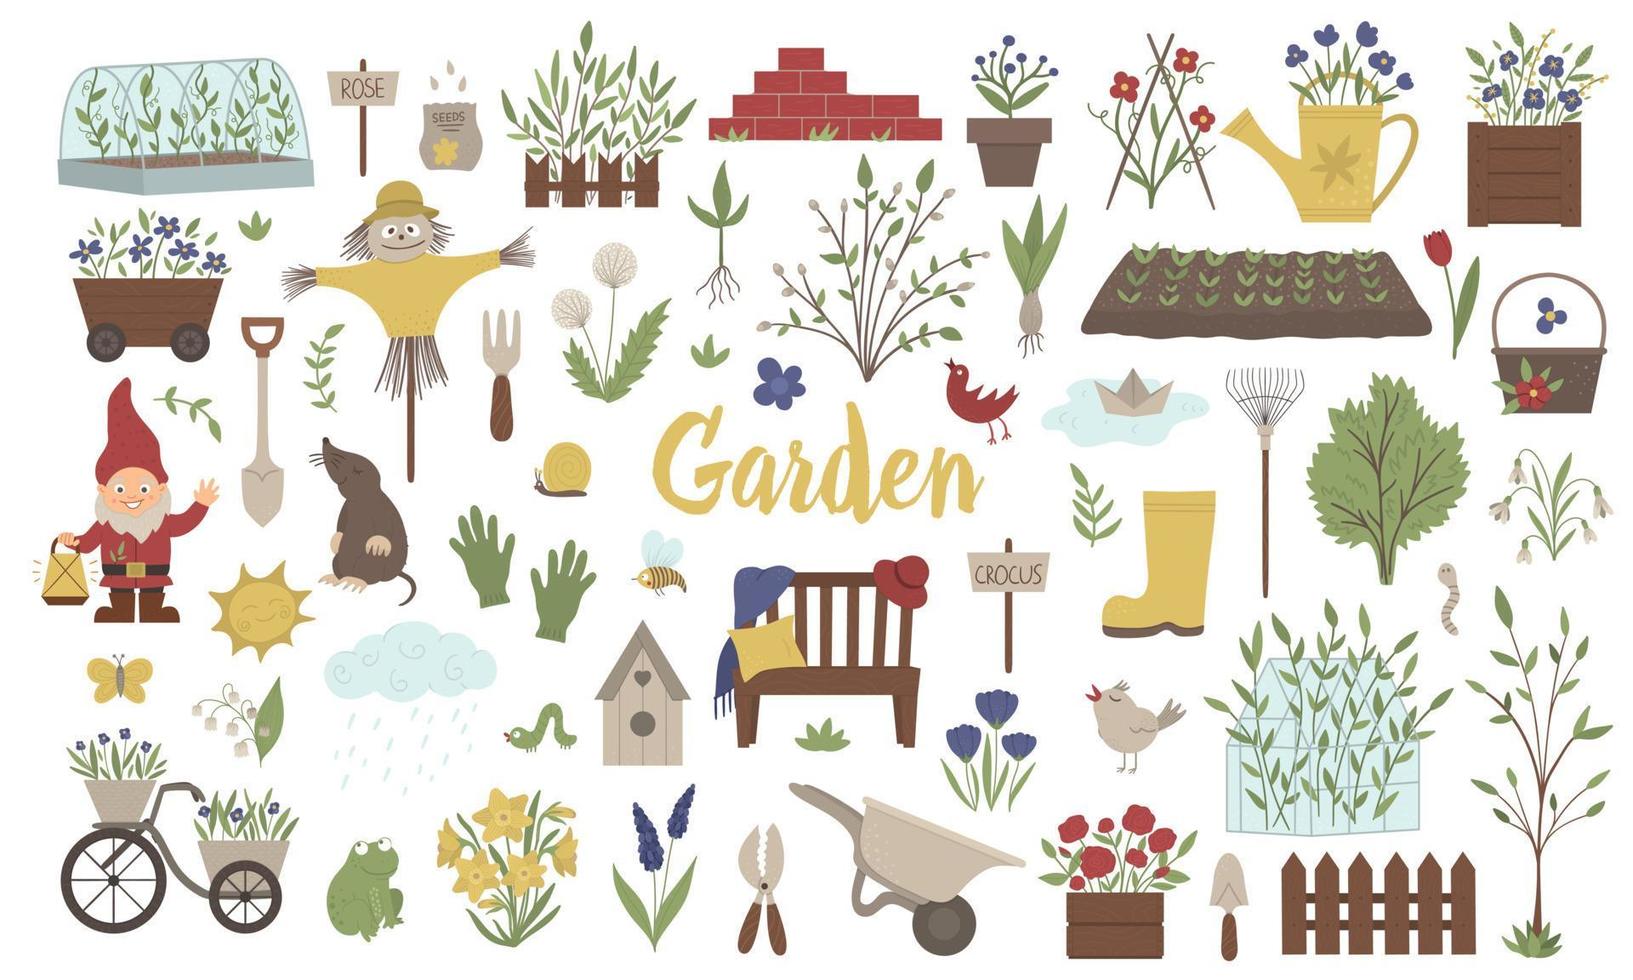 vector grote reeks gekleurde tuin dingen, gereedschappen, bloemen, kruiden, planten. verzameling tuingereedschap. platte lente illustratie geïsoleerd op een witte achtergrond.